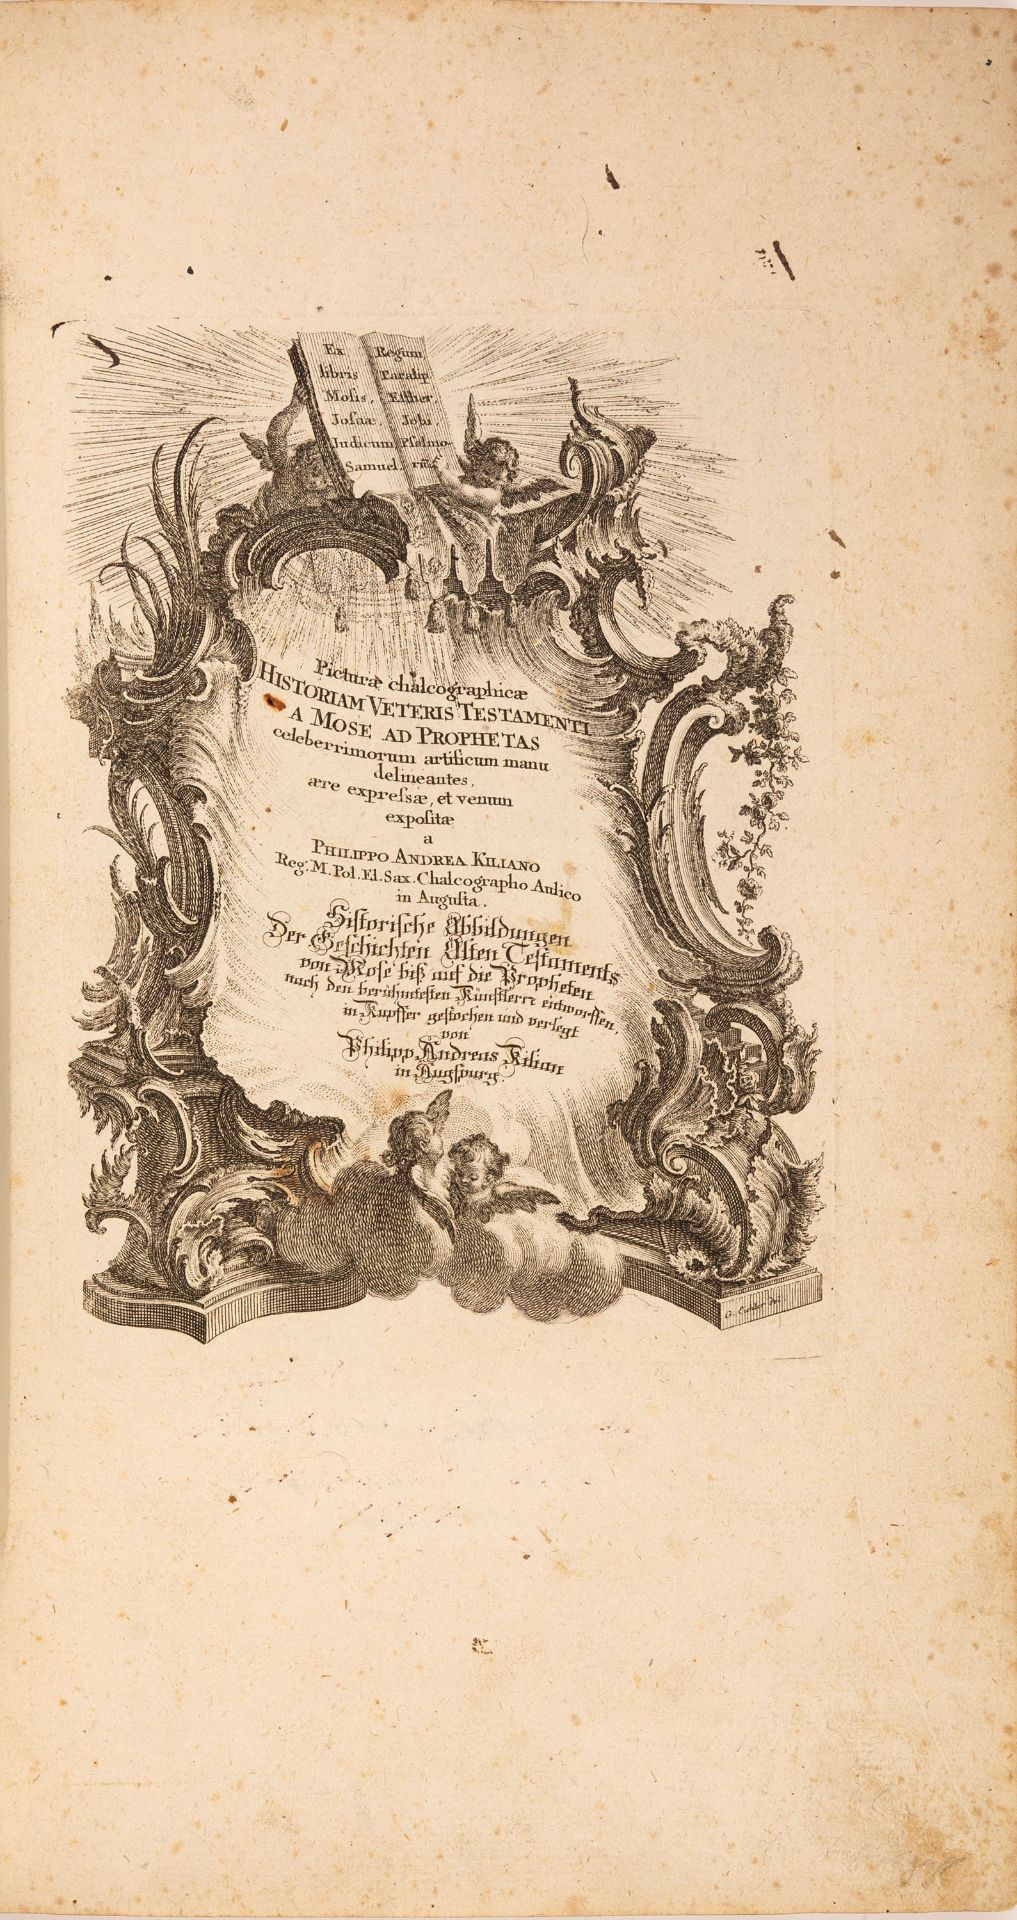 P. A. Kilian, Pictura chalcographicae historiam veteris testamenti. Augsburg (1758).